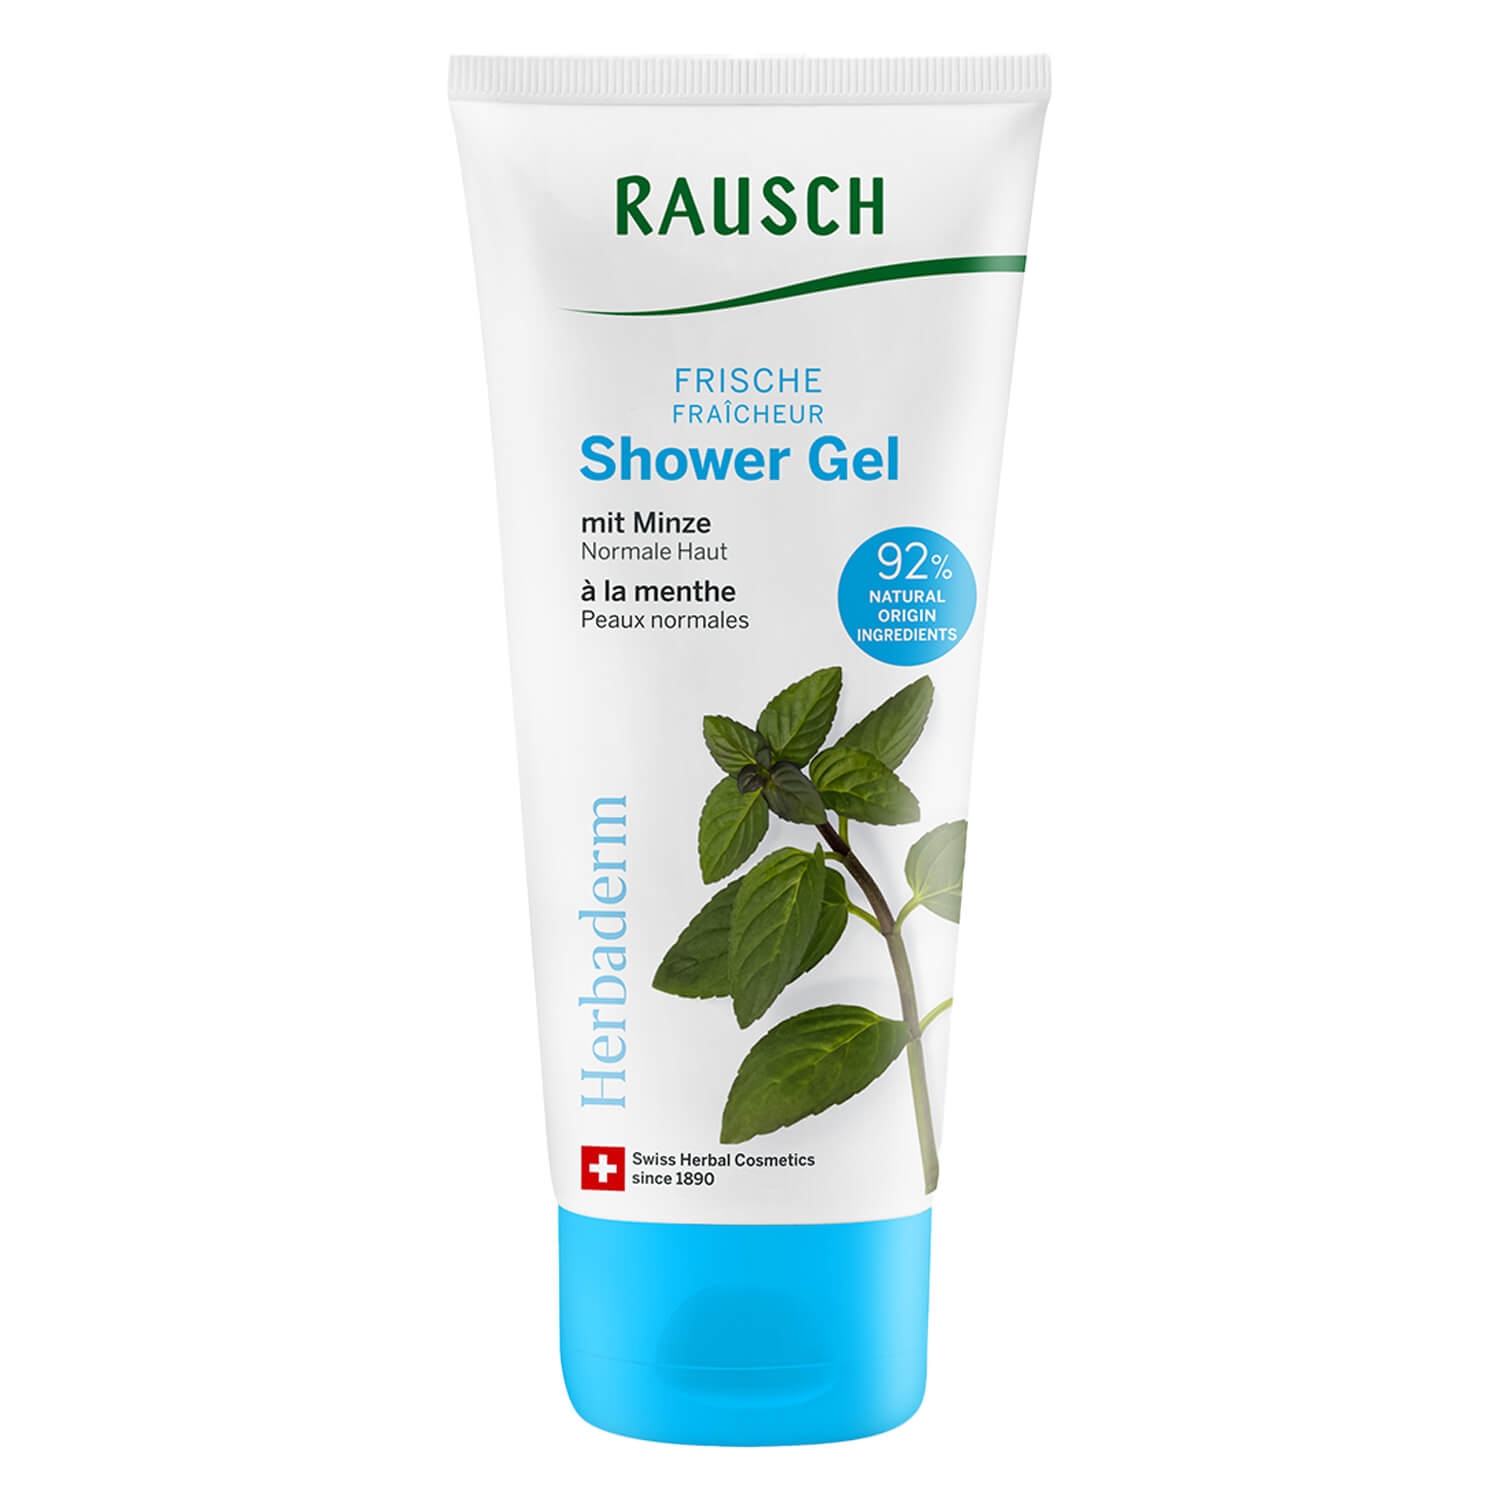 Produktbild von RAUSCH Body - Frische Shower Gel mit Minze